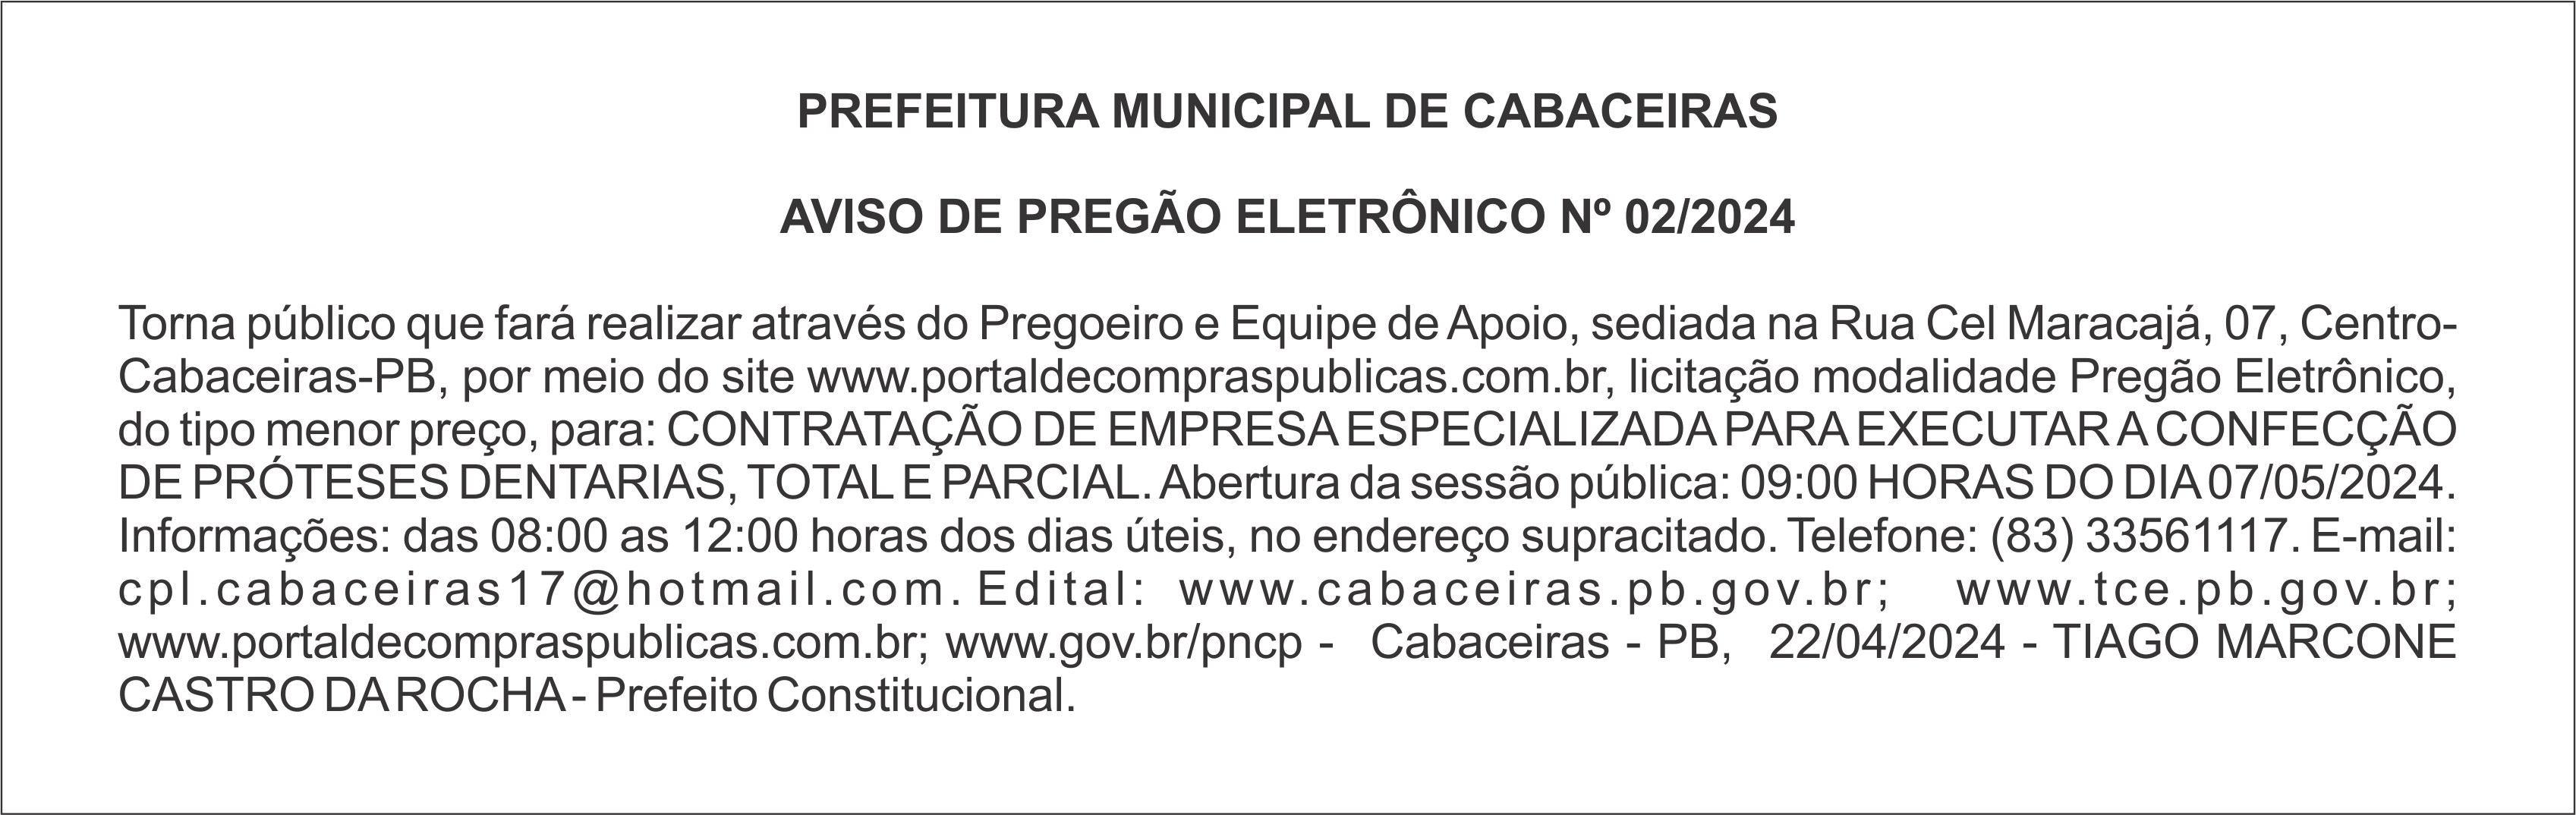 PREFEITURA MUNICIPAL DE CABACEIRAS – AVISO DE PREGÃO ELETRÔNICO Nº 02/2024